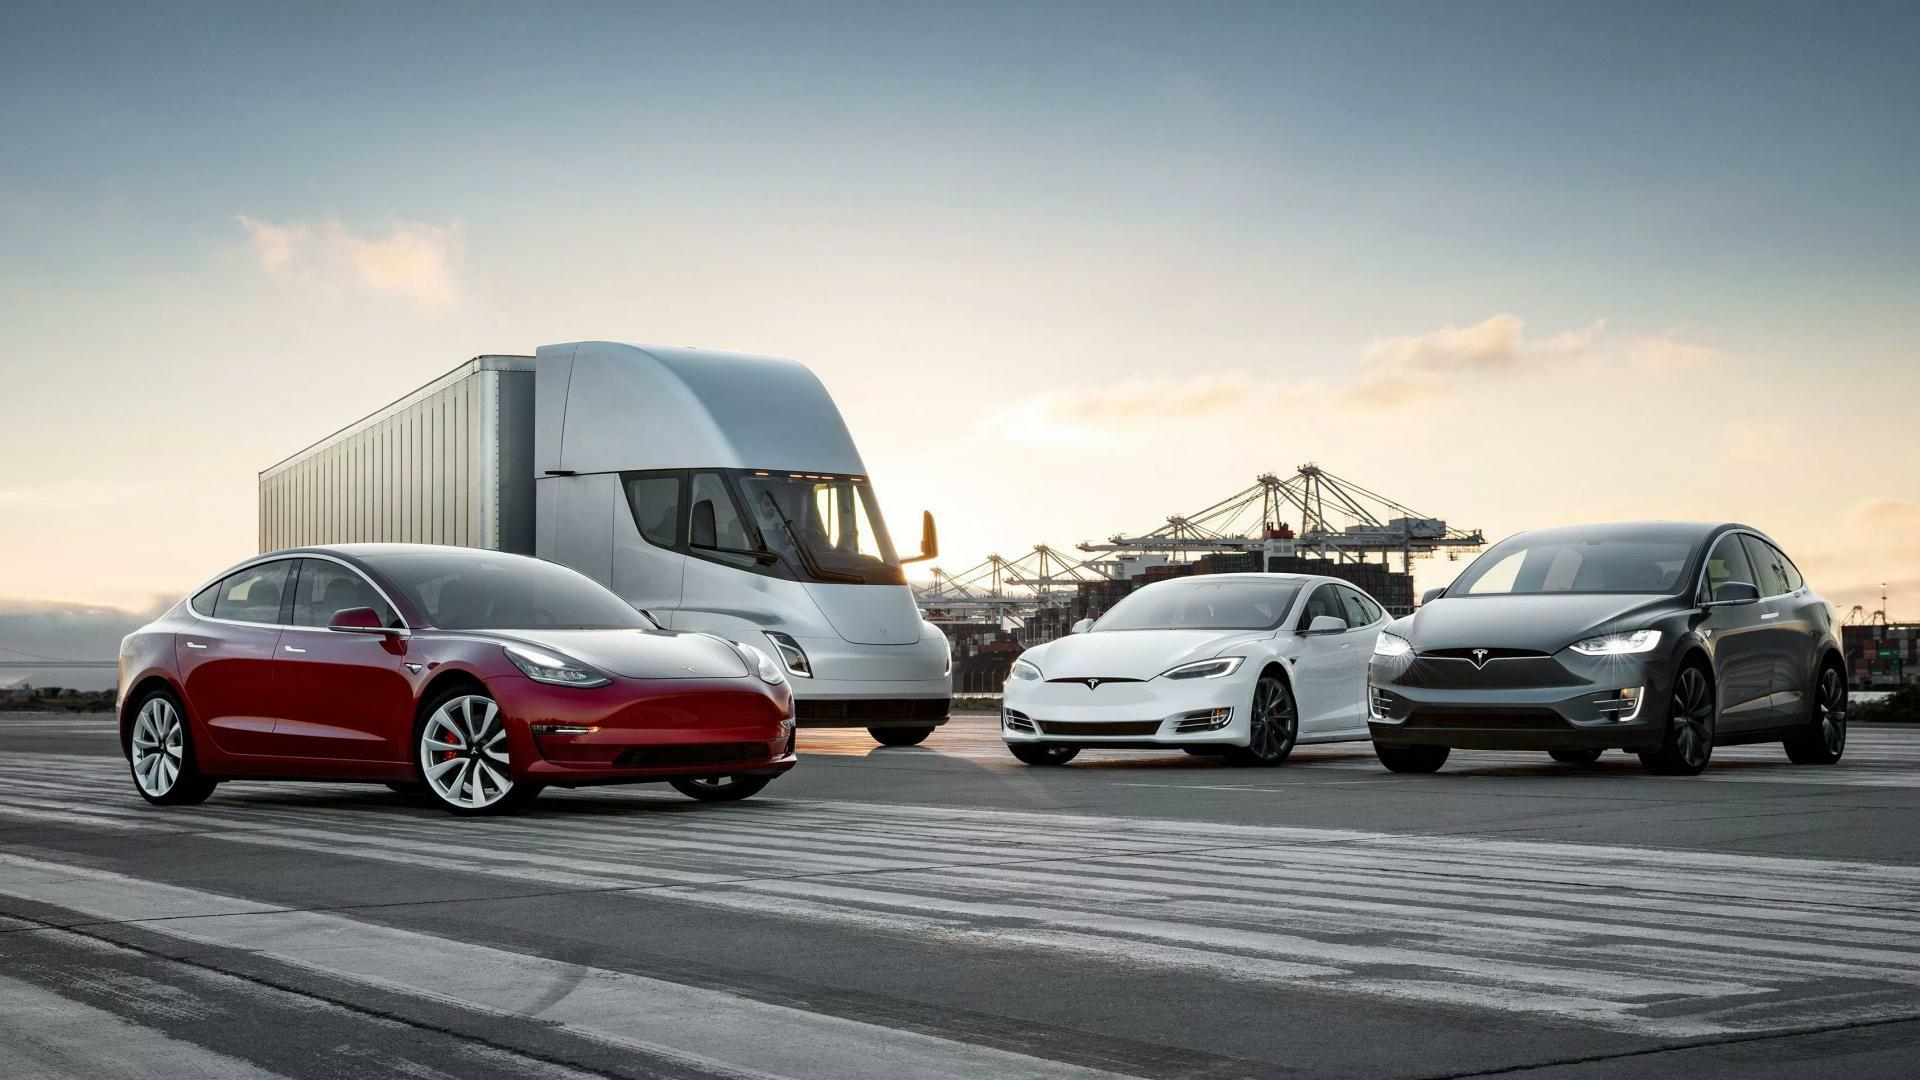 Welke Tesla's zijn binnenkort te zien in Nederland? Je vindt